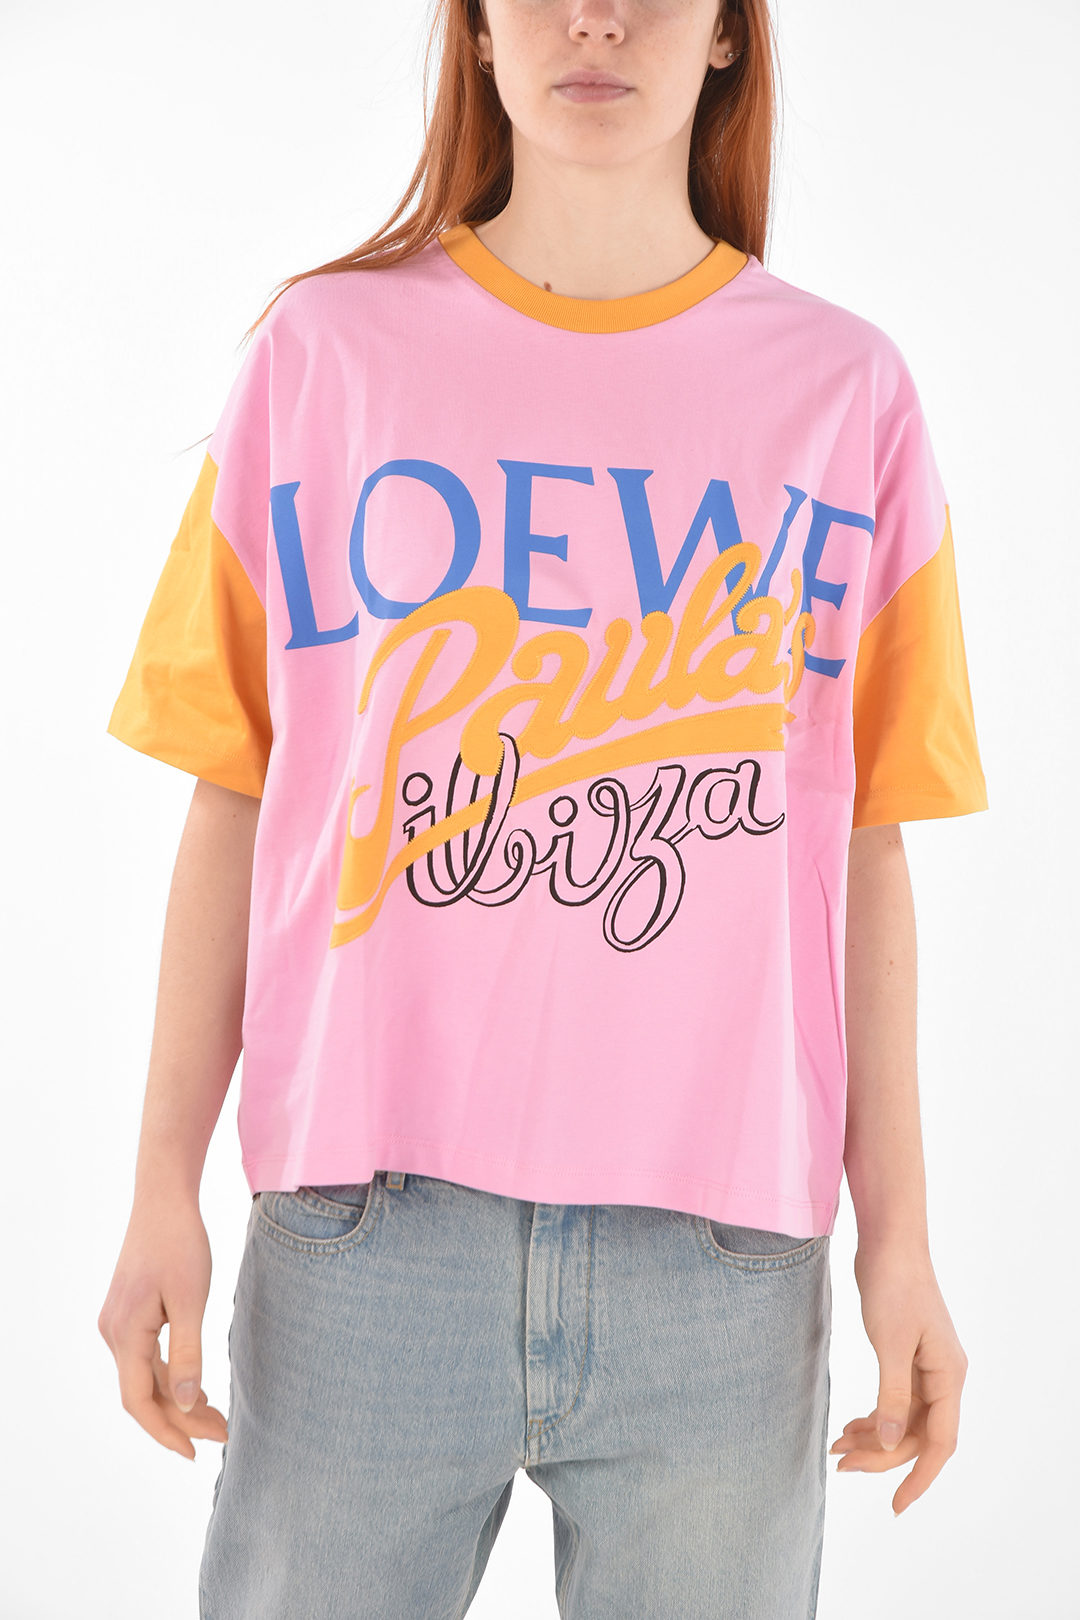 5,160円Tシャツ LOEWE/ Paula’s Ibiza